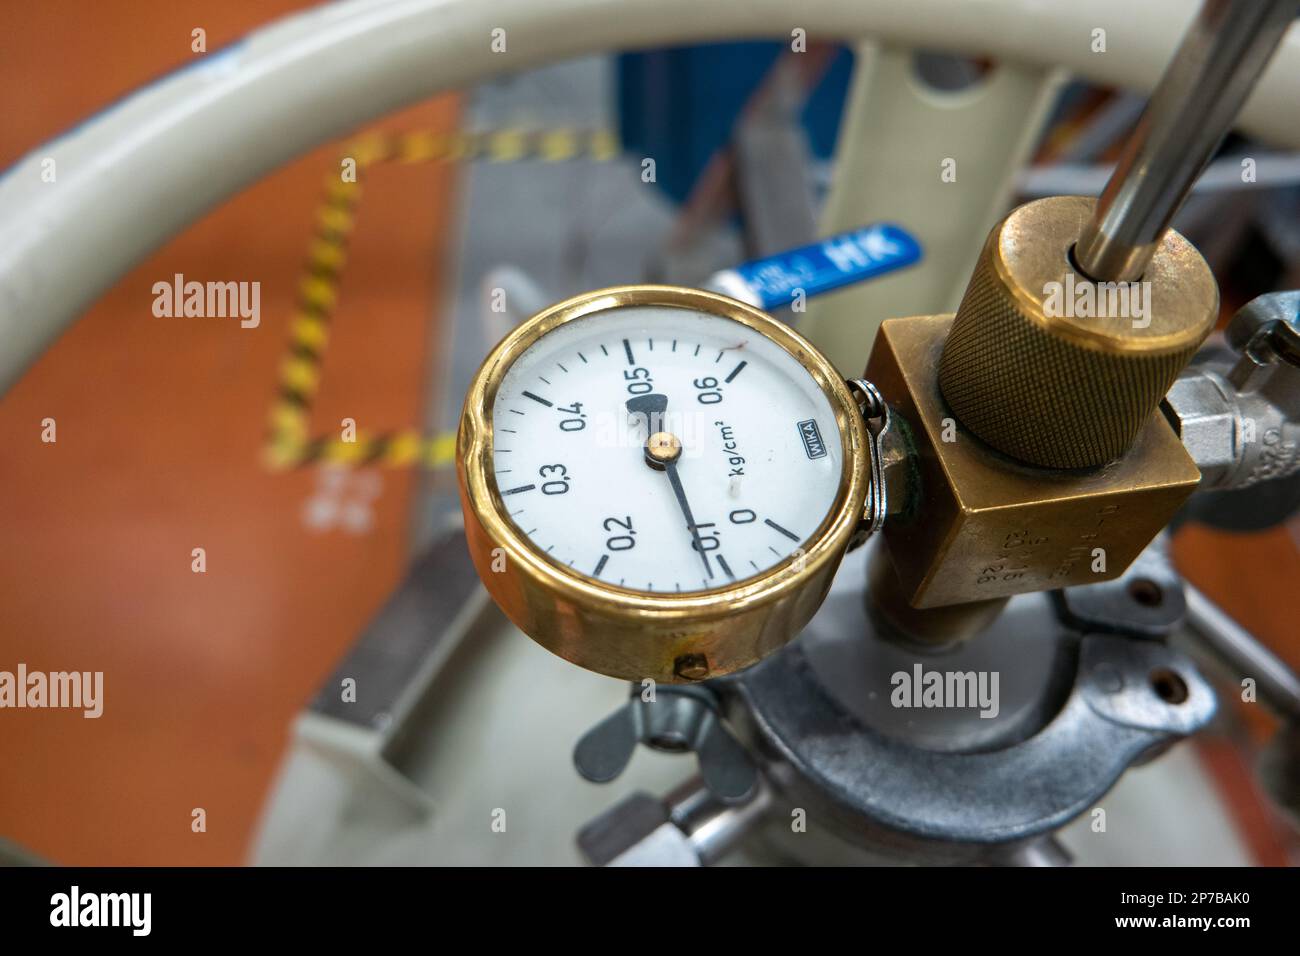 Abgestufte Manometer für Druckbehälter – Nahaufnahme in einem Werkstattlabor. Geringe Schärfentiefe, keine Menschen. Stockfoto